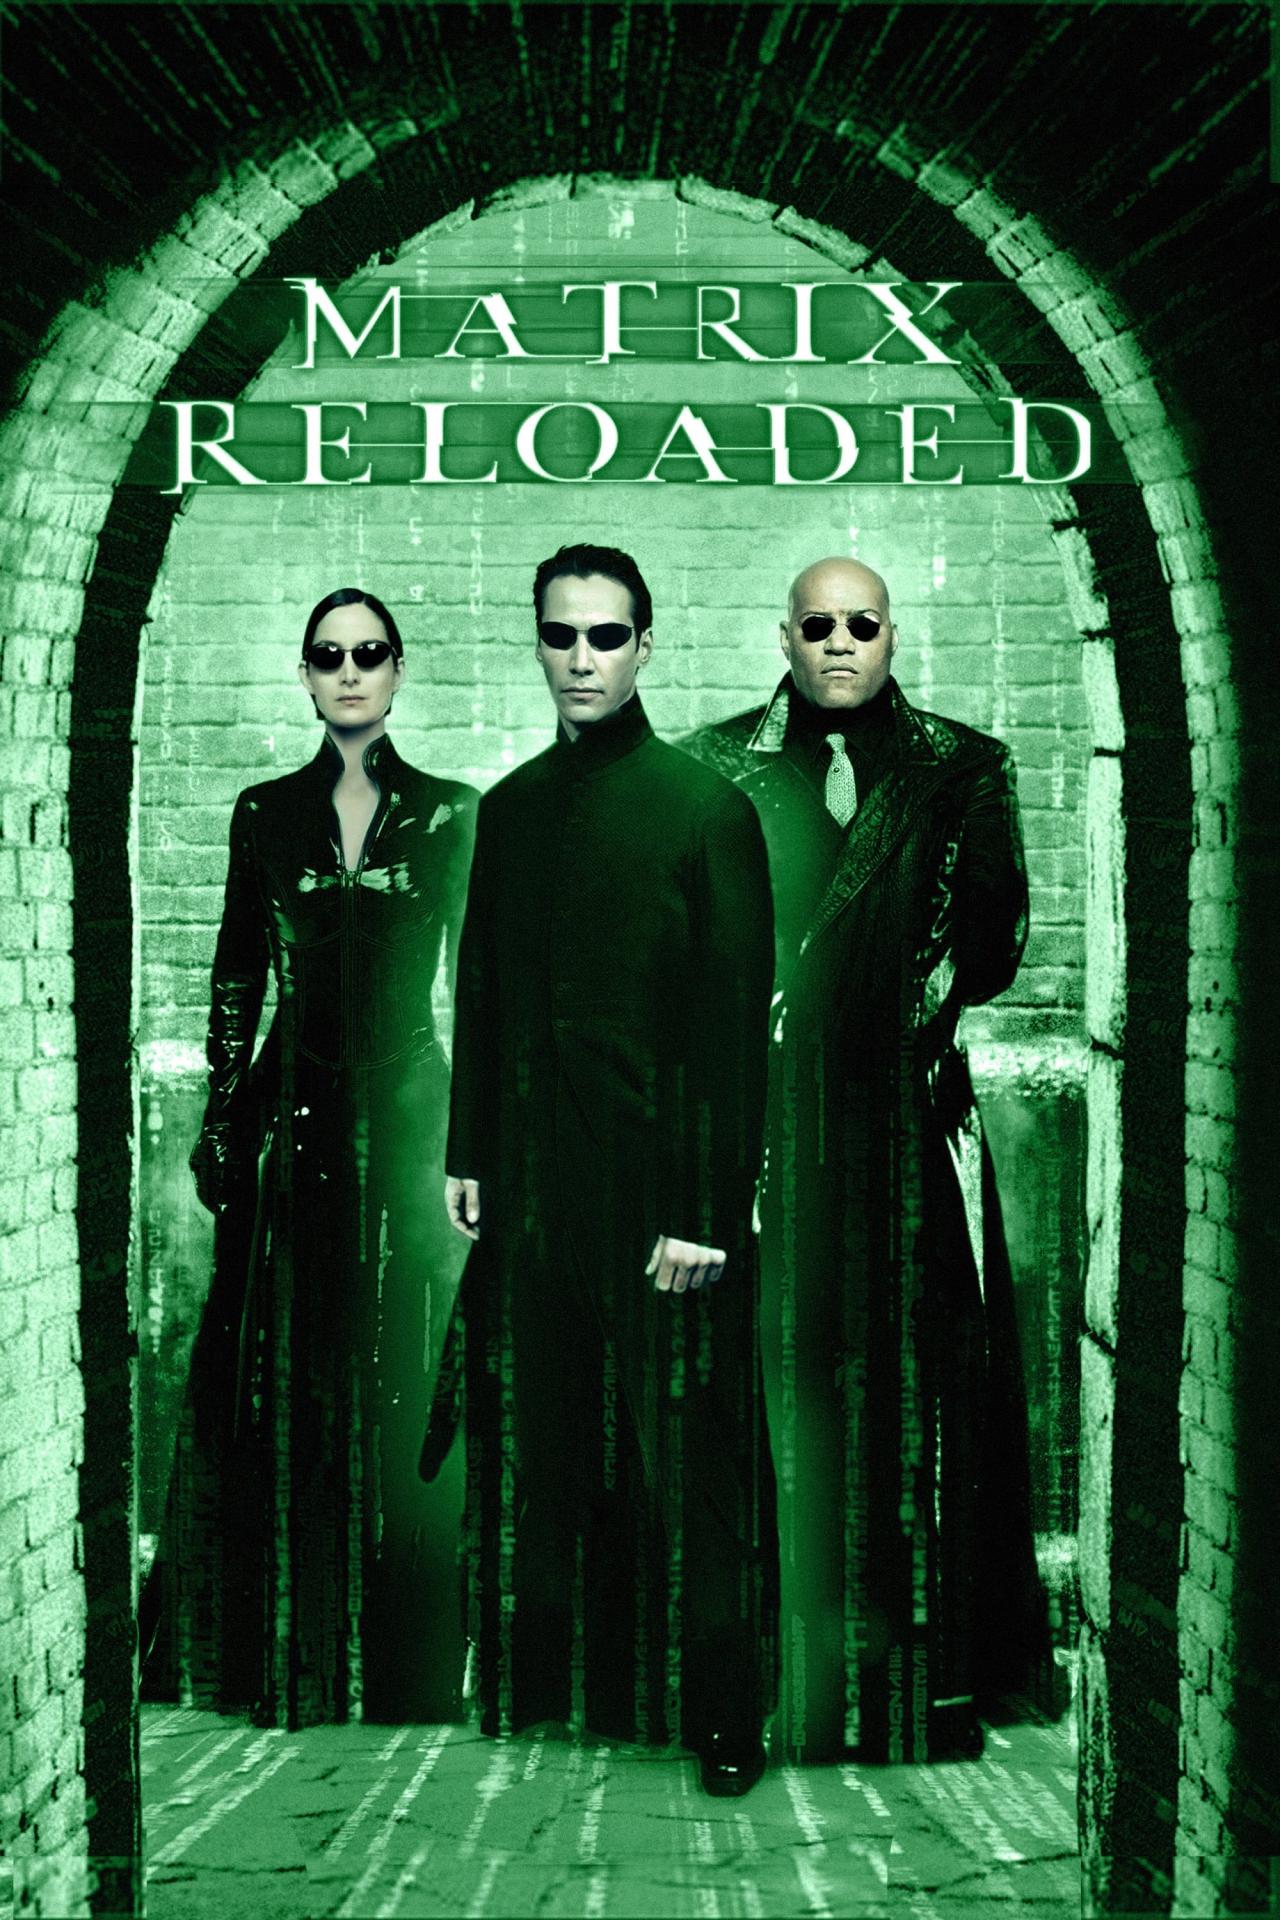 Affiche du film Matrix Reloaded